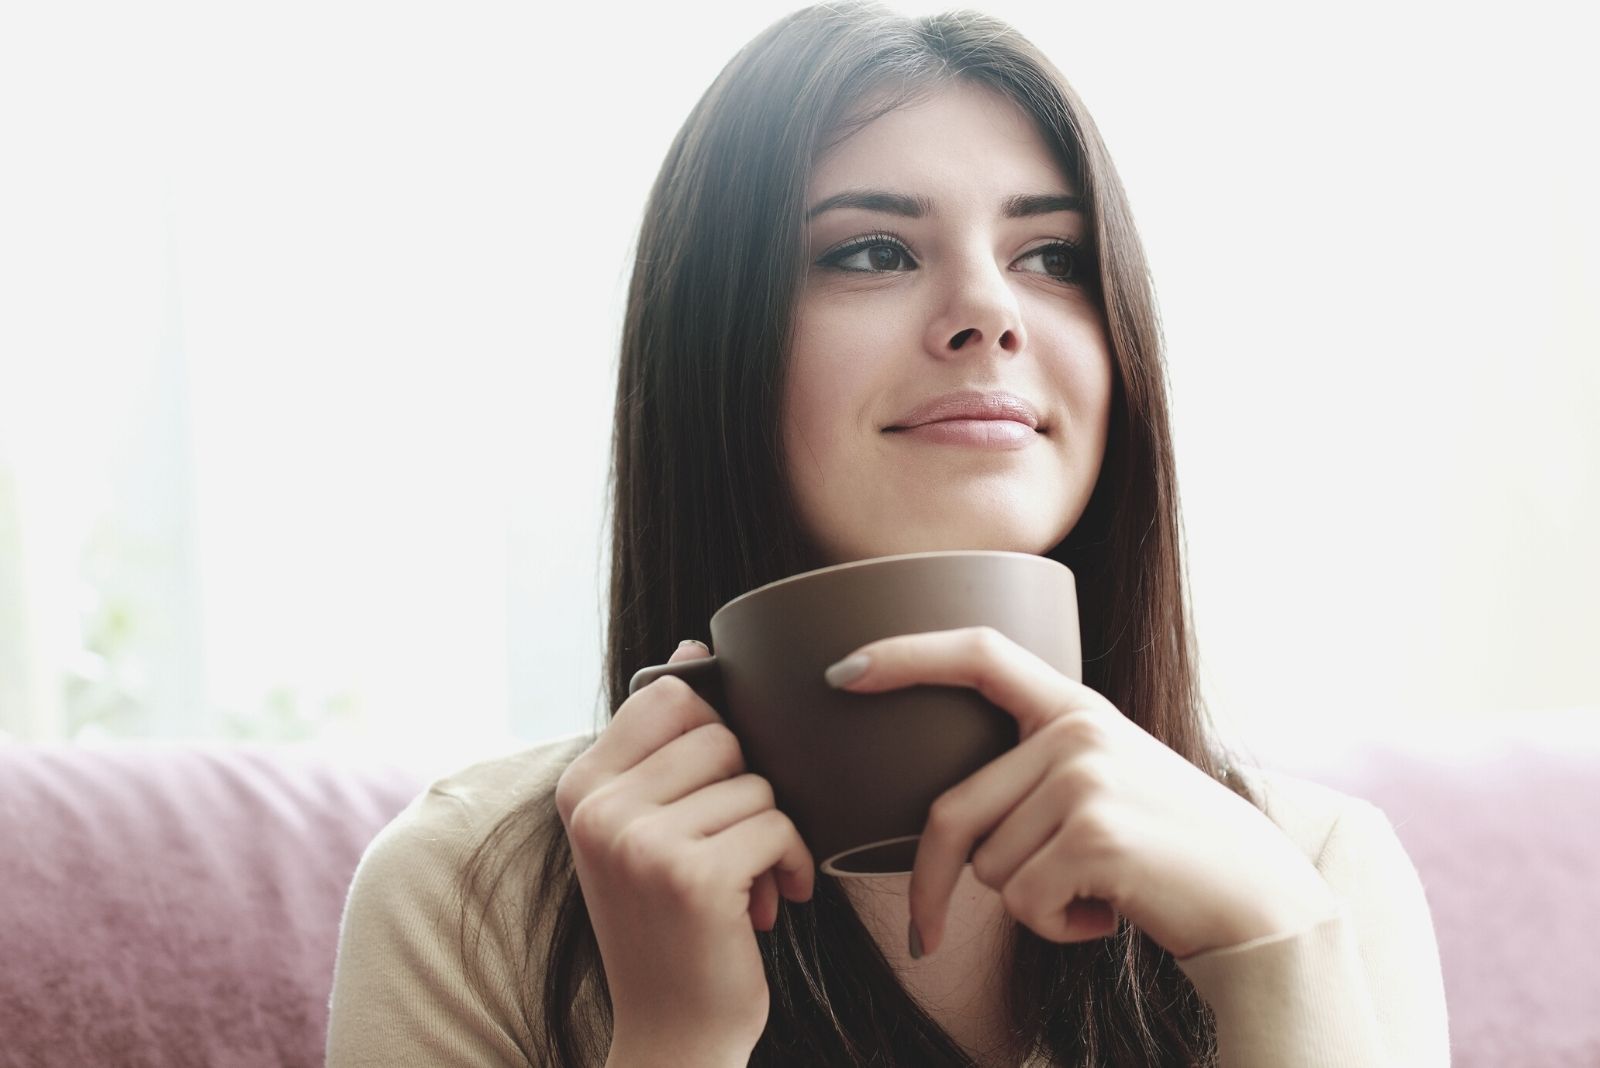 giovane donna felice e riflessiva che beve un caffè e si siede sul divano in una fotografia ravvicinata